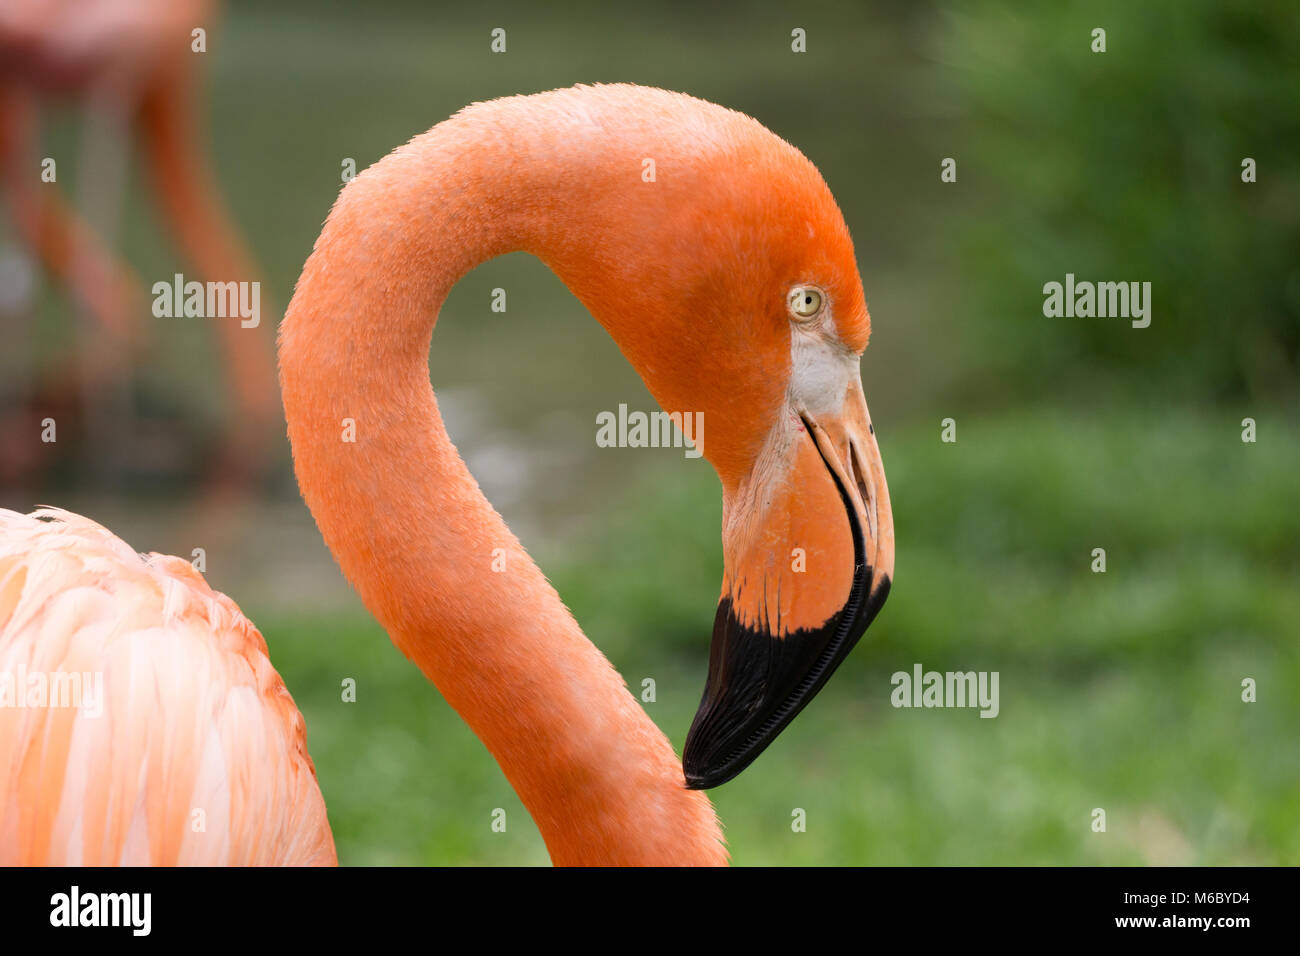 San Diego Zoo animals Stock Photo - Alamy